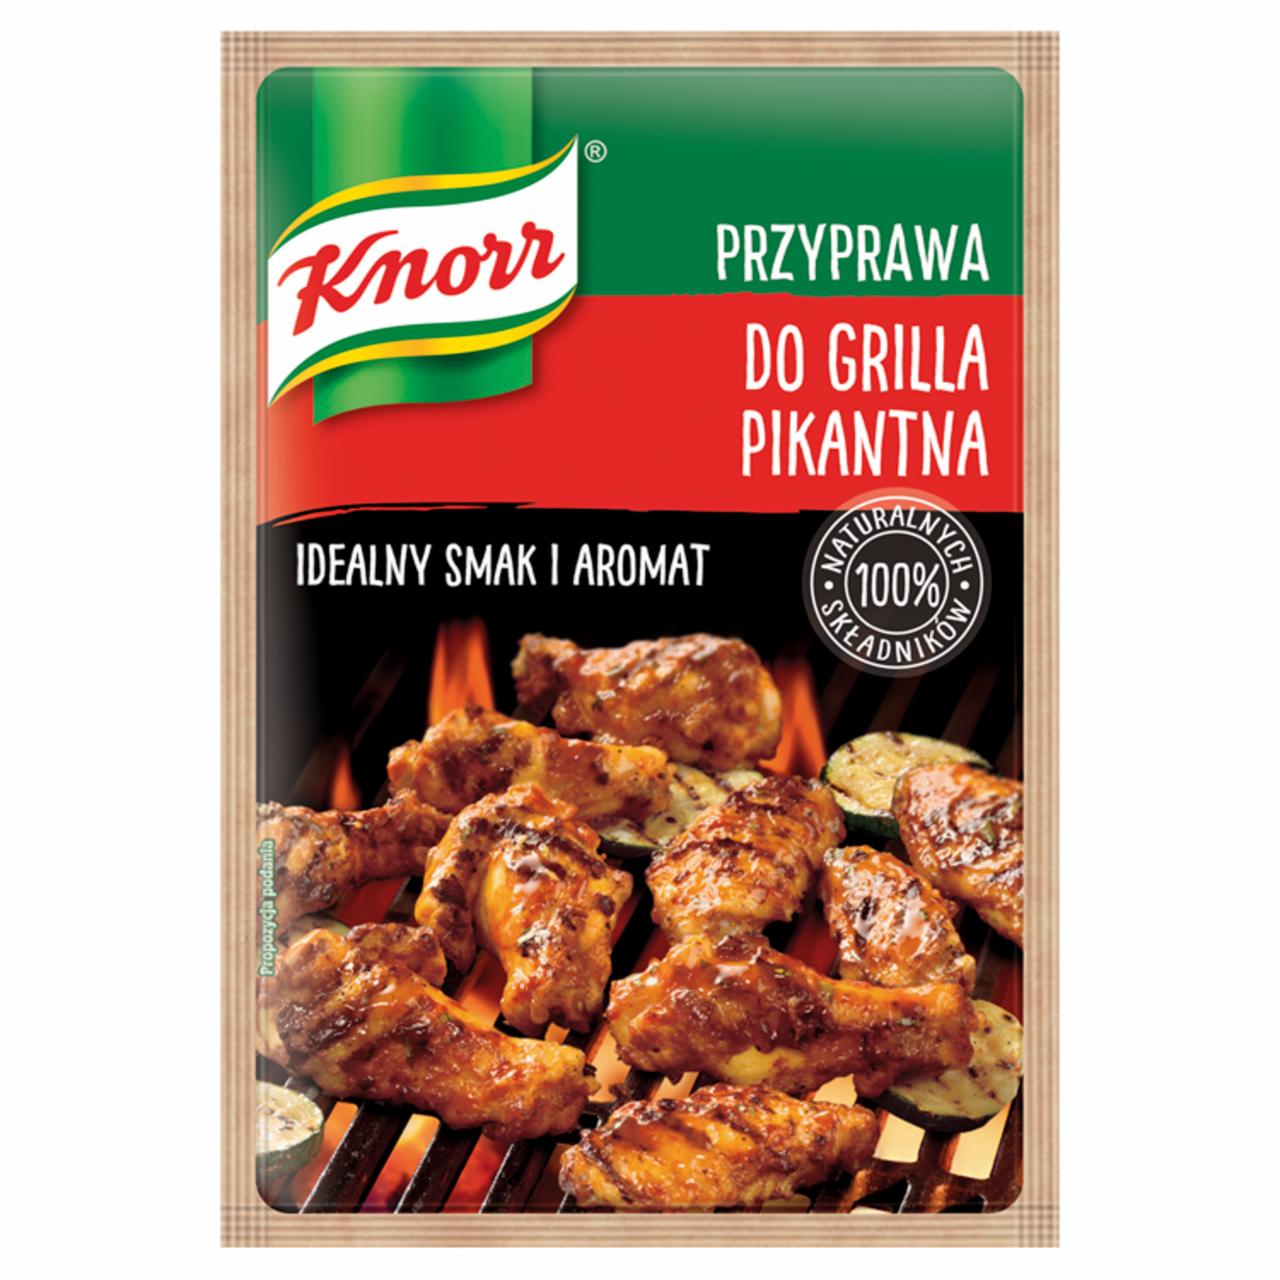 Zdjęcia - Knorr Przyprawa do grilla pikantna 23 g